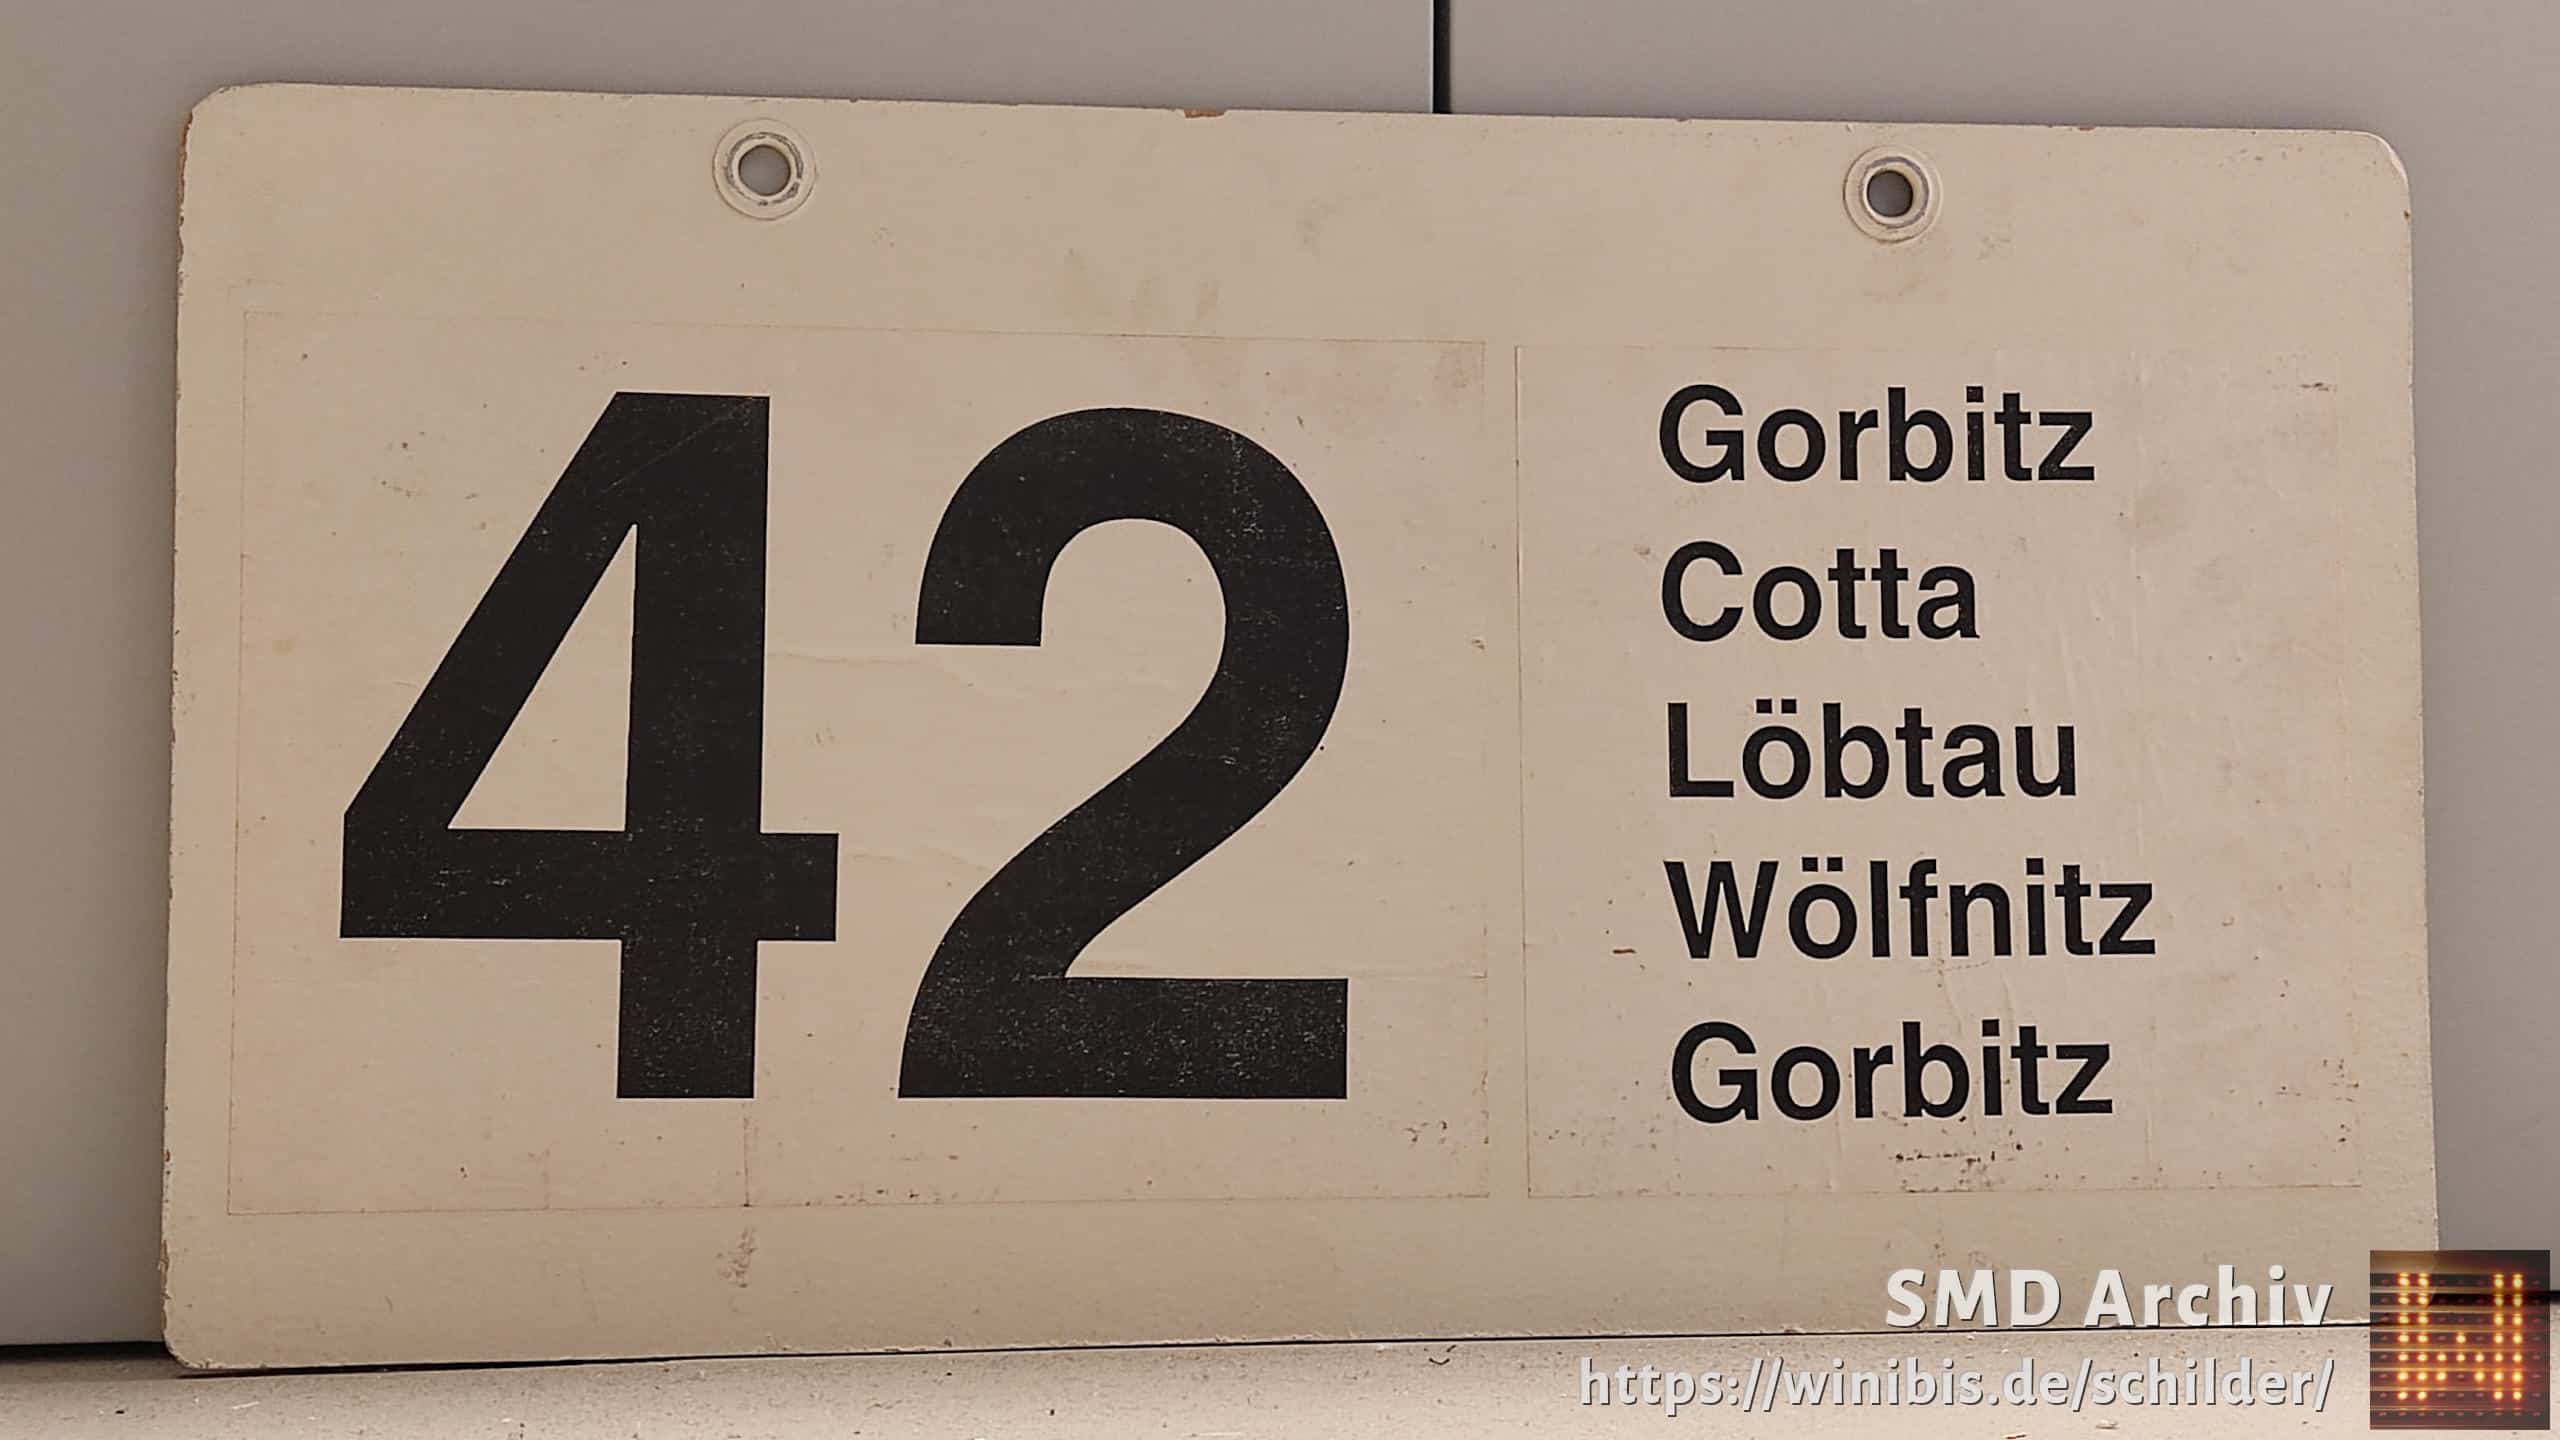 42 Gorbitz – Gorbitz